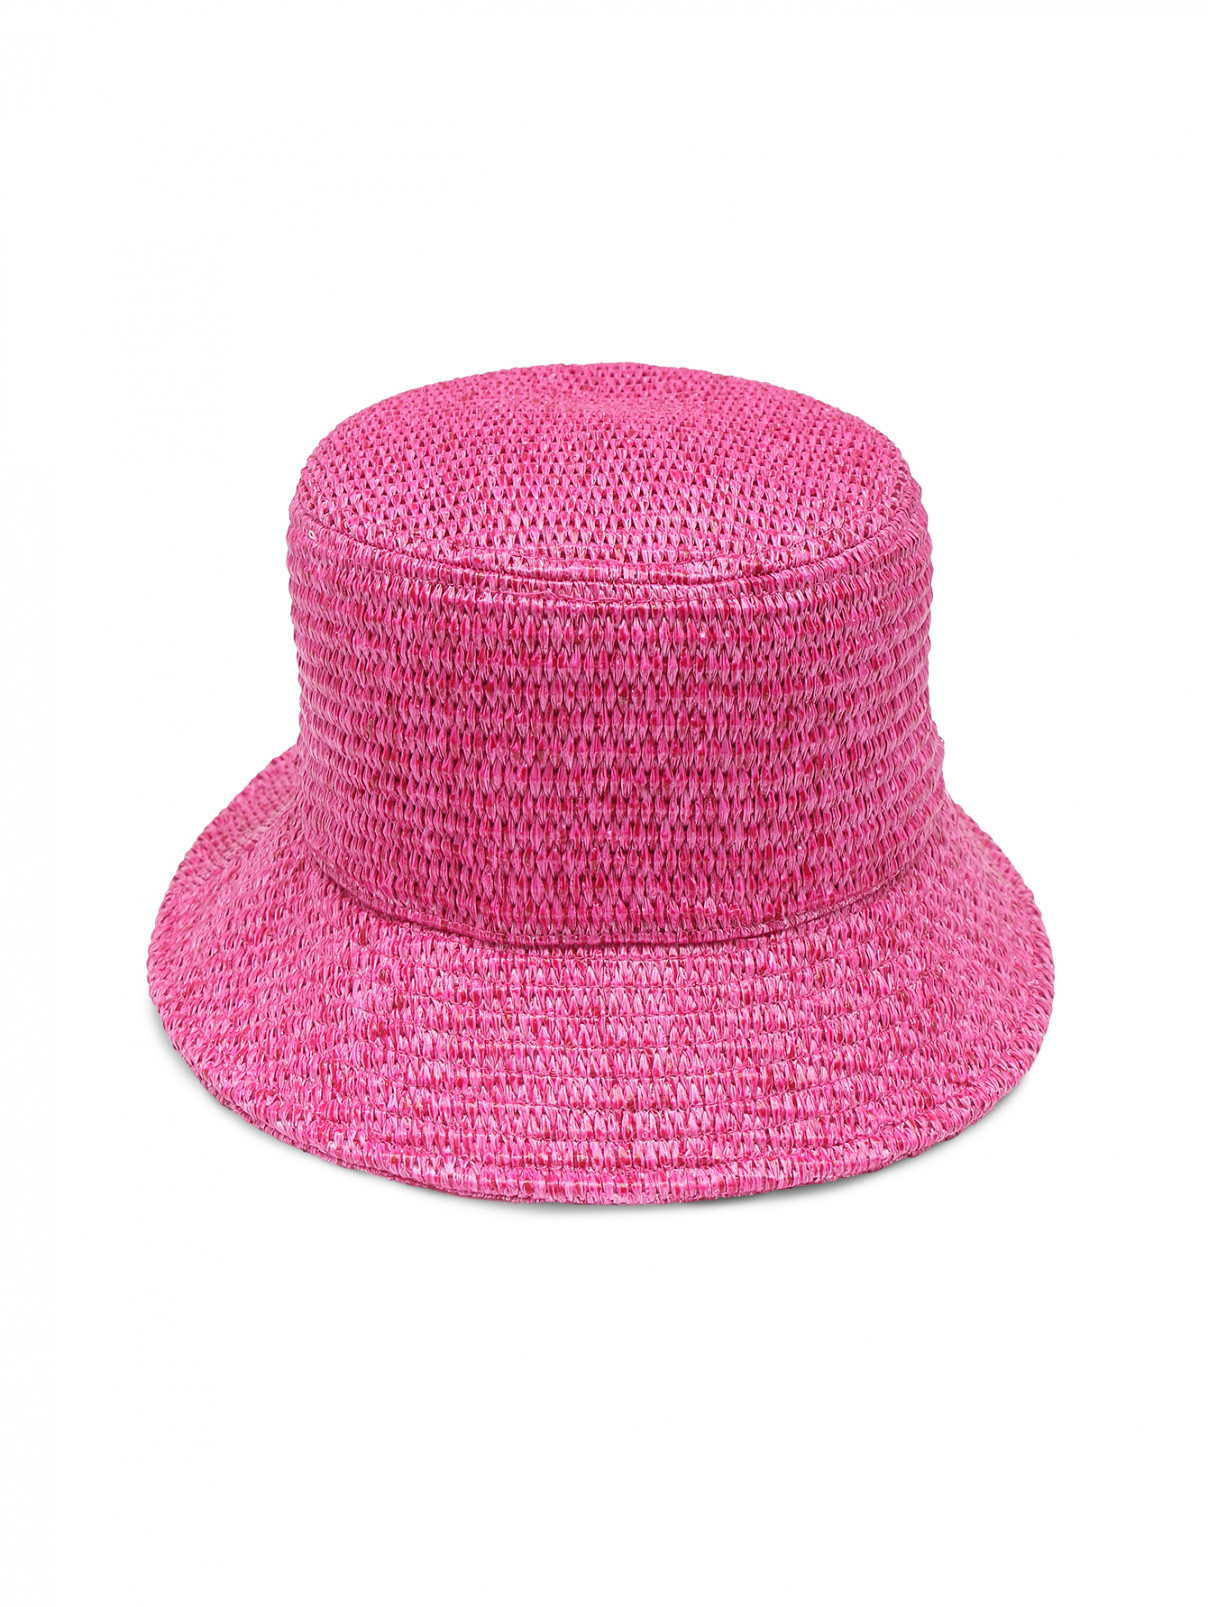 Шляпа плетеная с узкими полями Weekend Max Mara  –  Общий вид  – Цвет:  Розовый